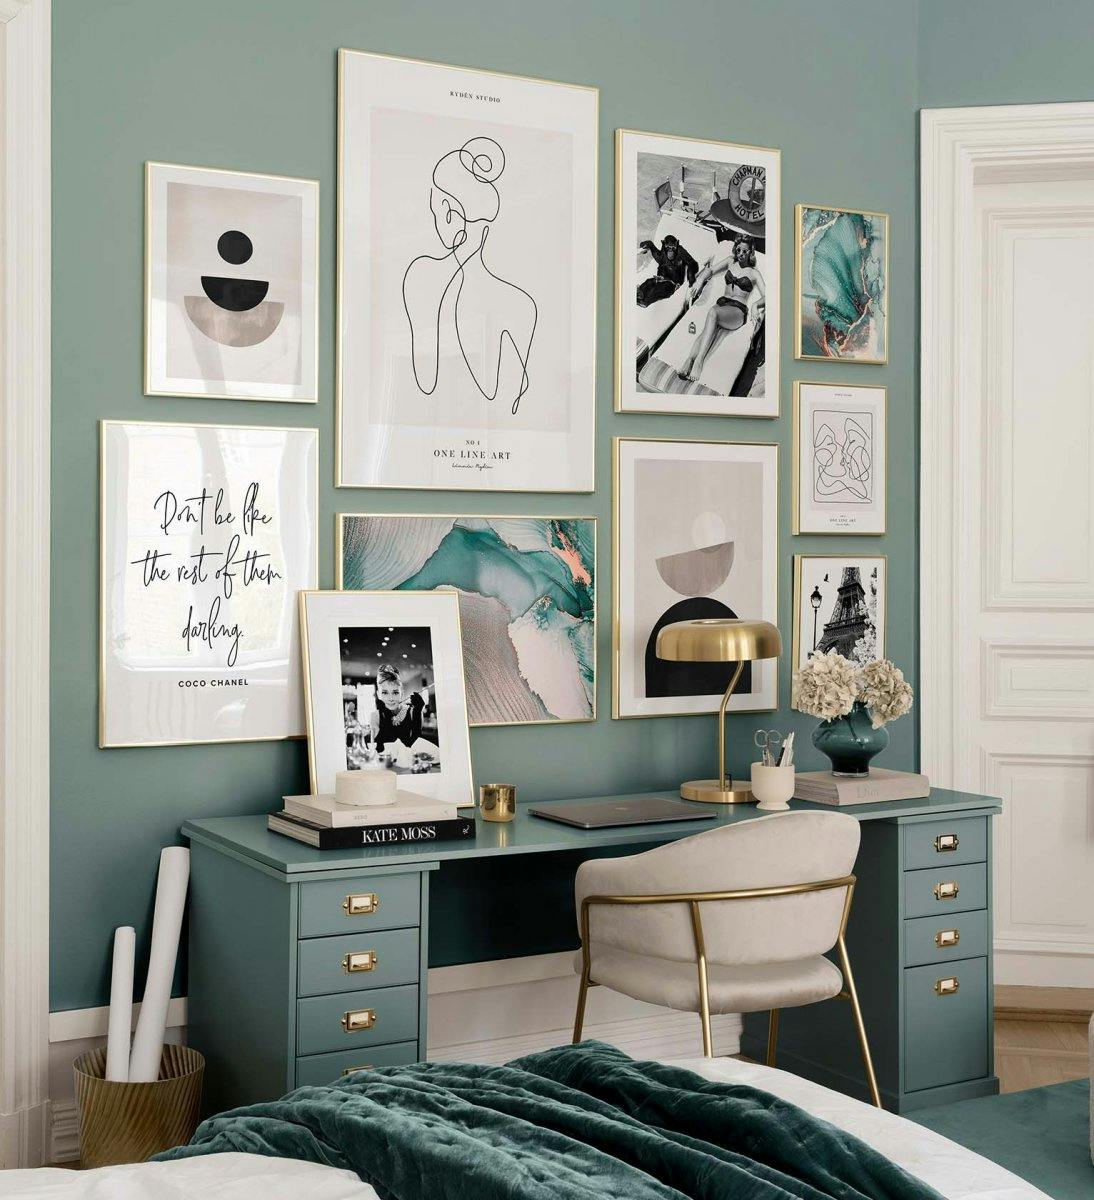 Modna ściana galerii z grafiką, grafiką i odbitkami fotograficznymi w kolorach zielonym i naturalnym ze złotymi ramkami do sypia